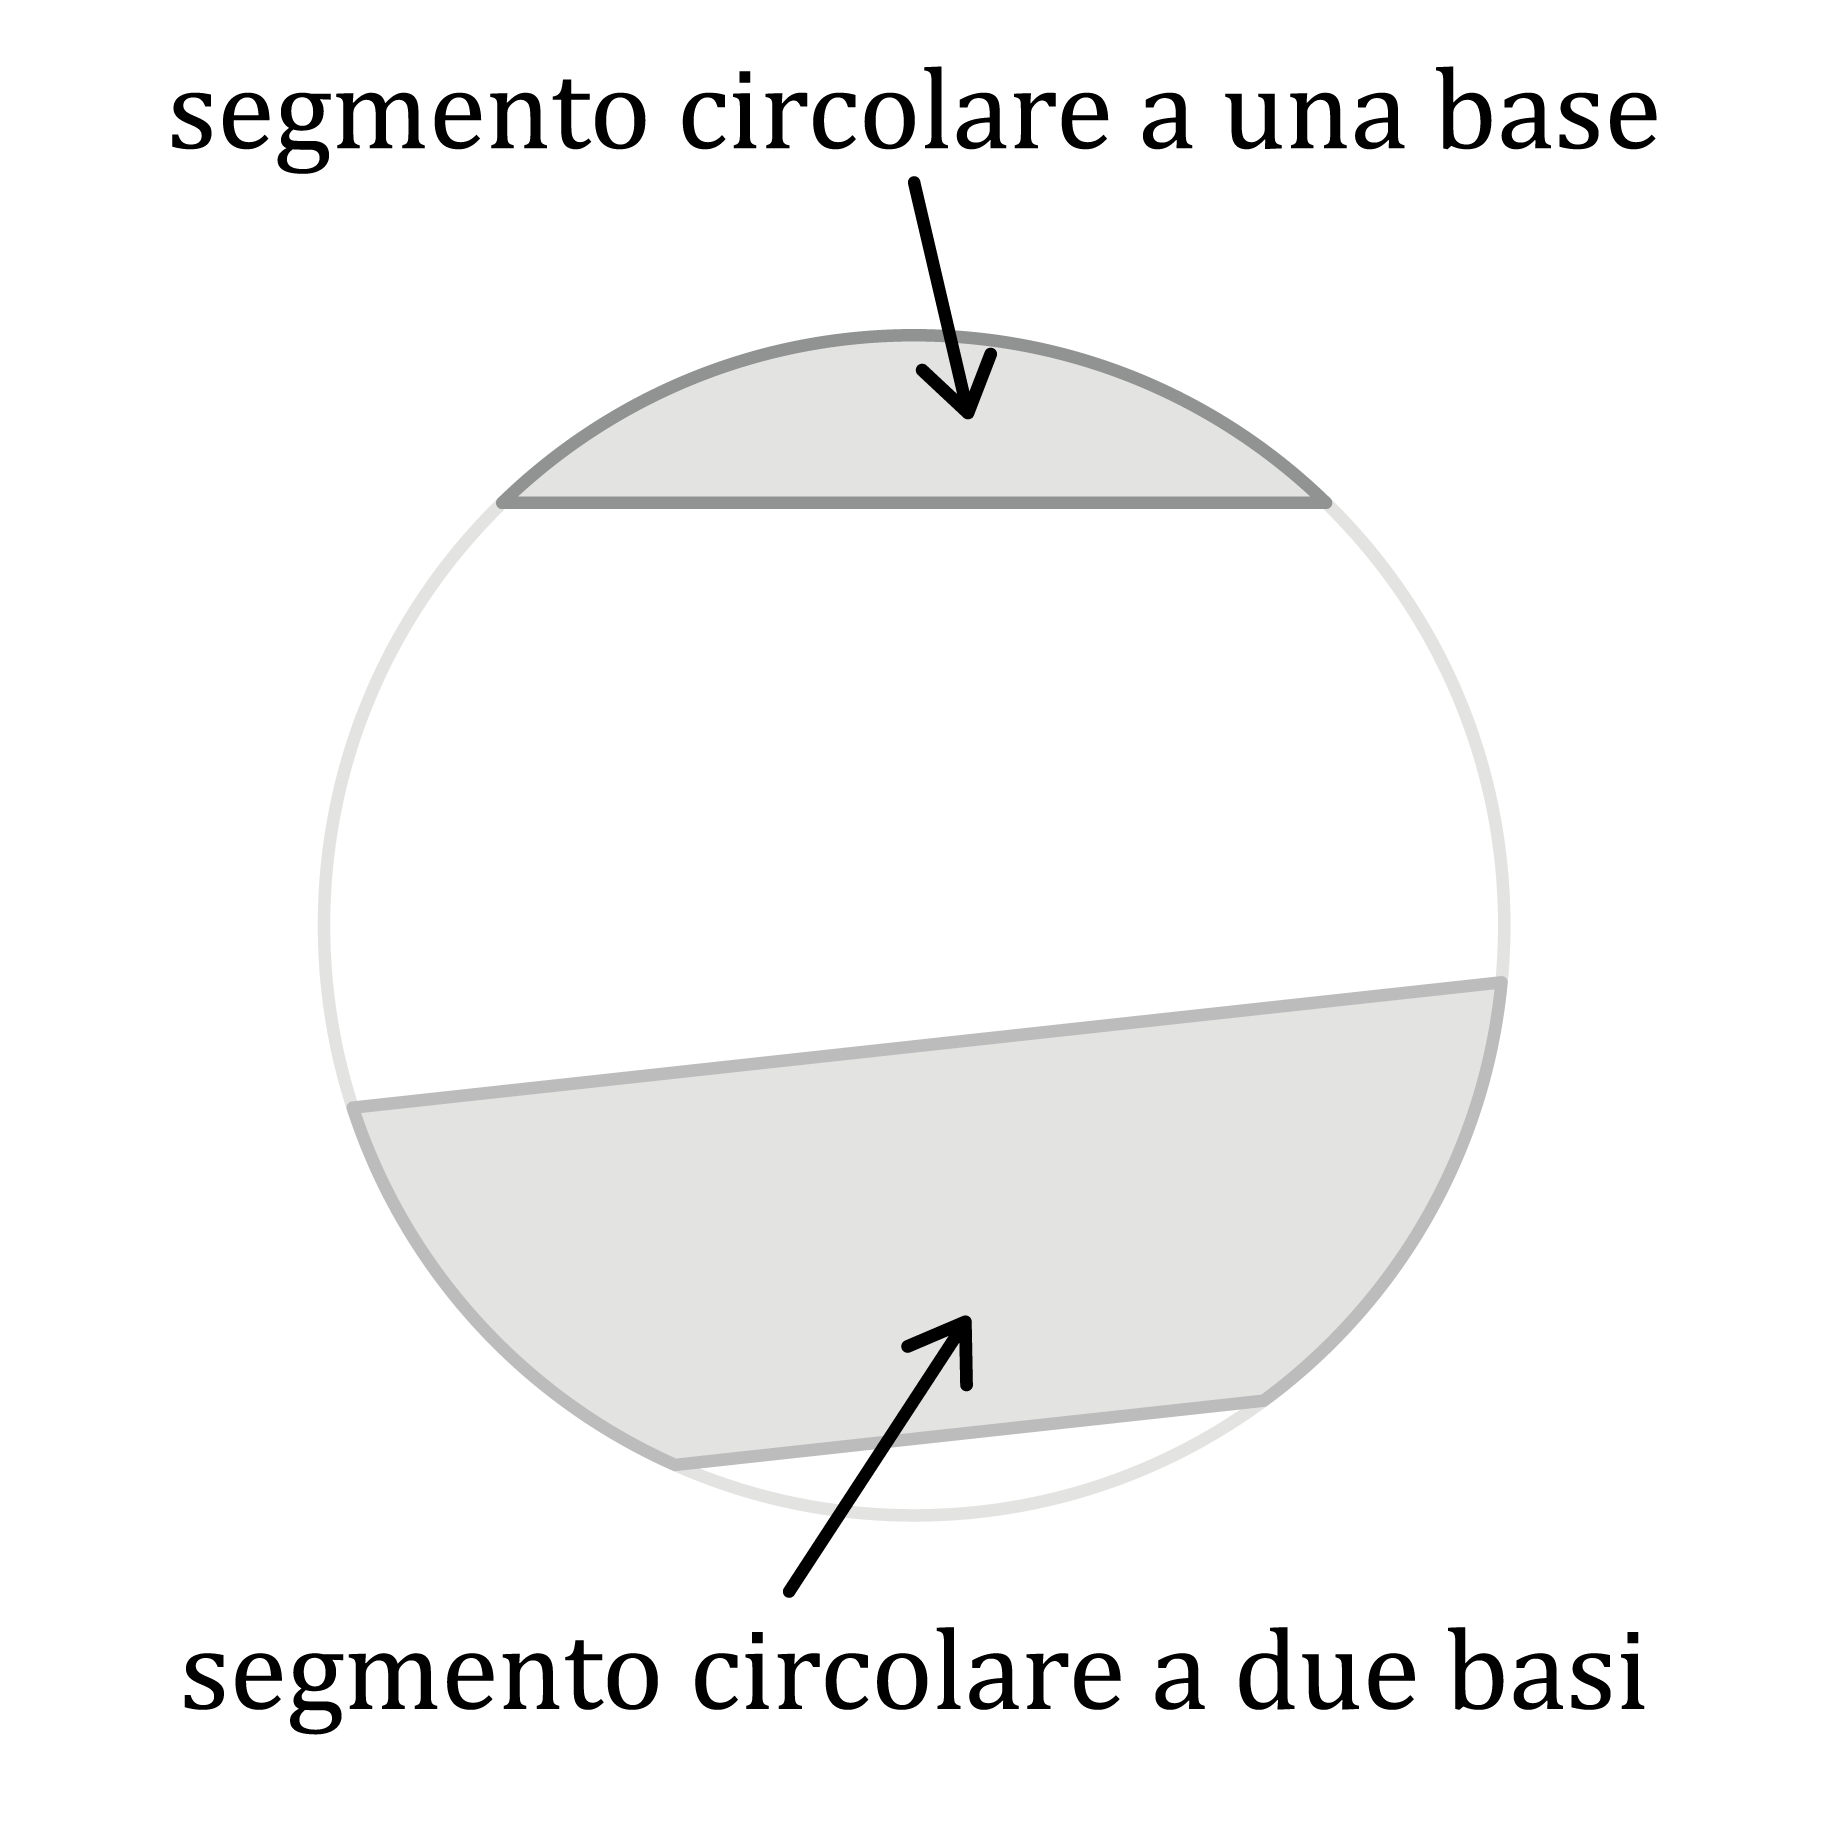 Matematica; Coniche nel piano cartesiano; 2a superiore; Circonferenza e cerchio